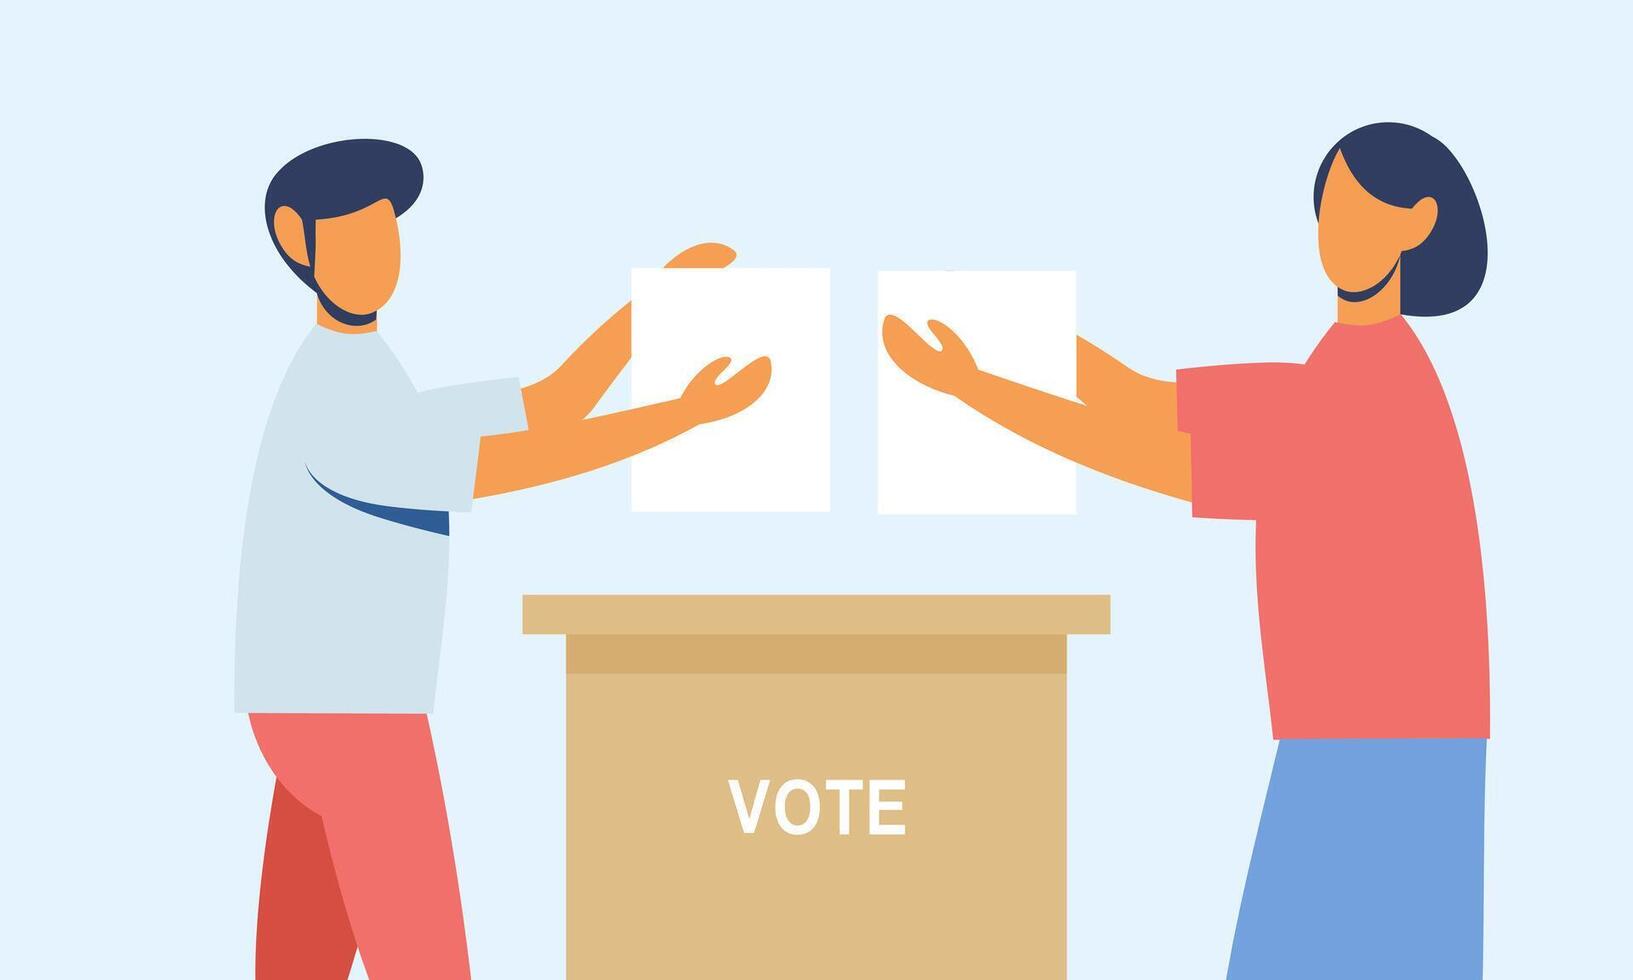 Polling Platz eben Vektor Illustration. Wähler Personen Gießen Stimmzettel Putten Papiere mit Abstimmung in